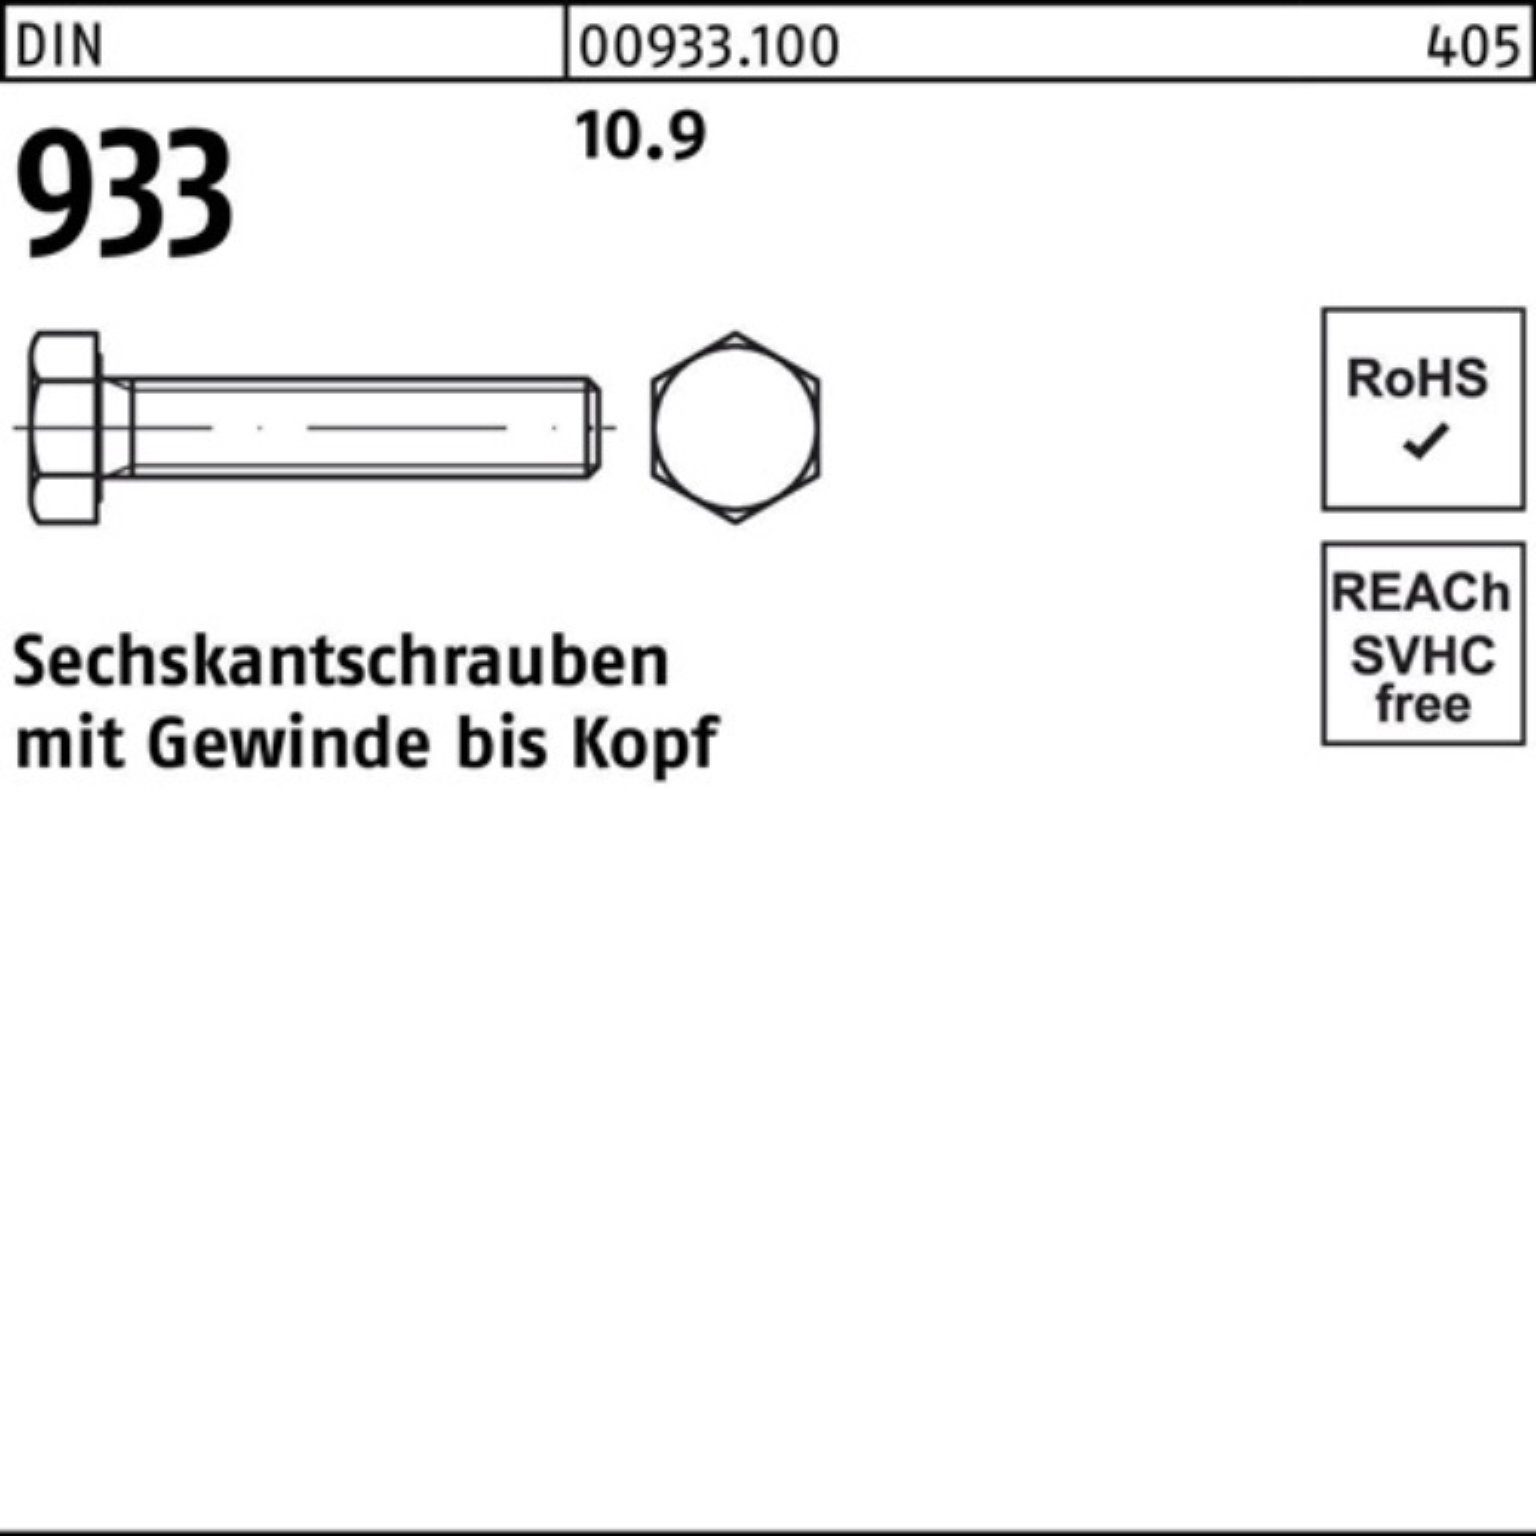 Reyher Sechskantschraube VG 80 10 Pack DIN 933 933 Stück Sechskantschraube 100er DIN M27x 10.9